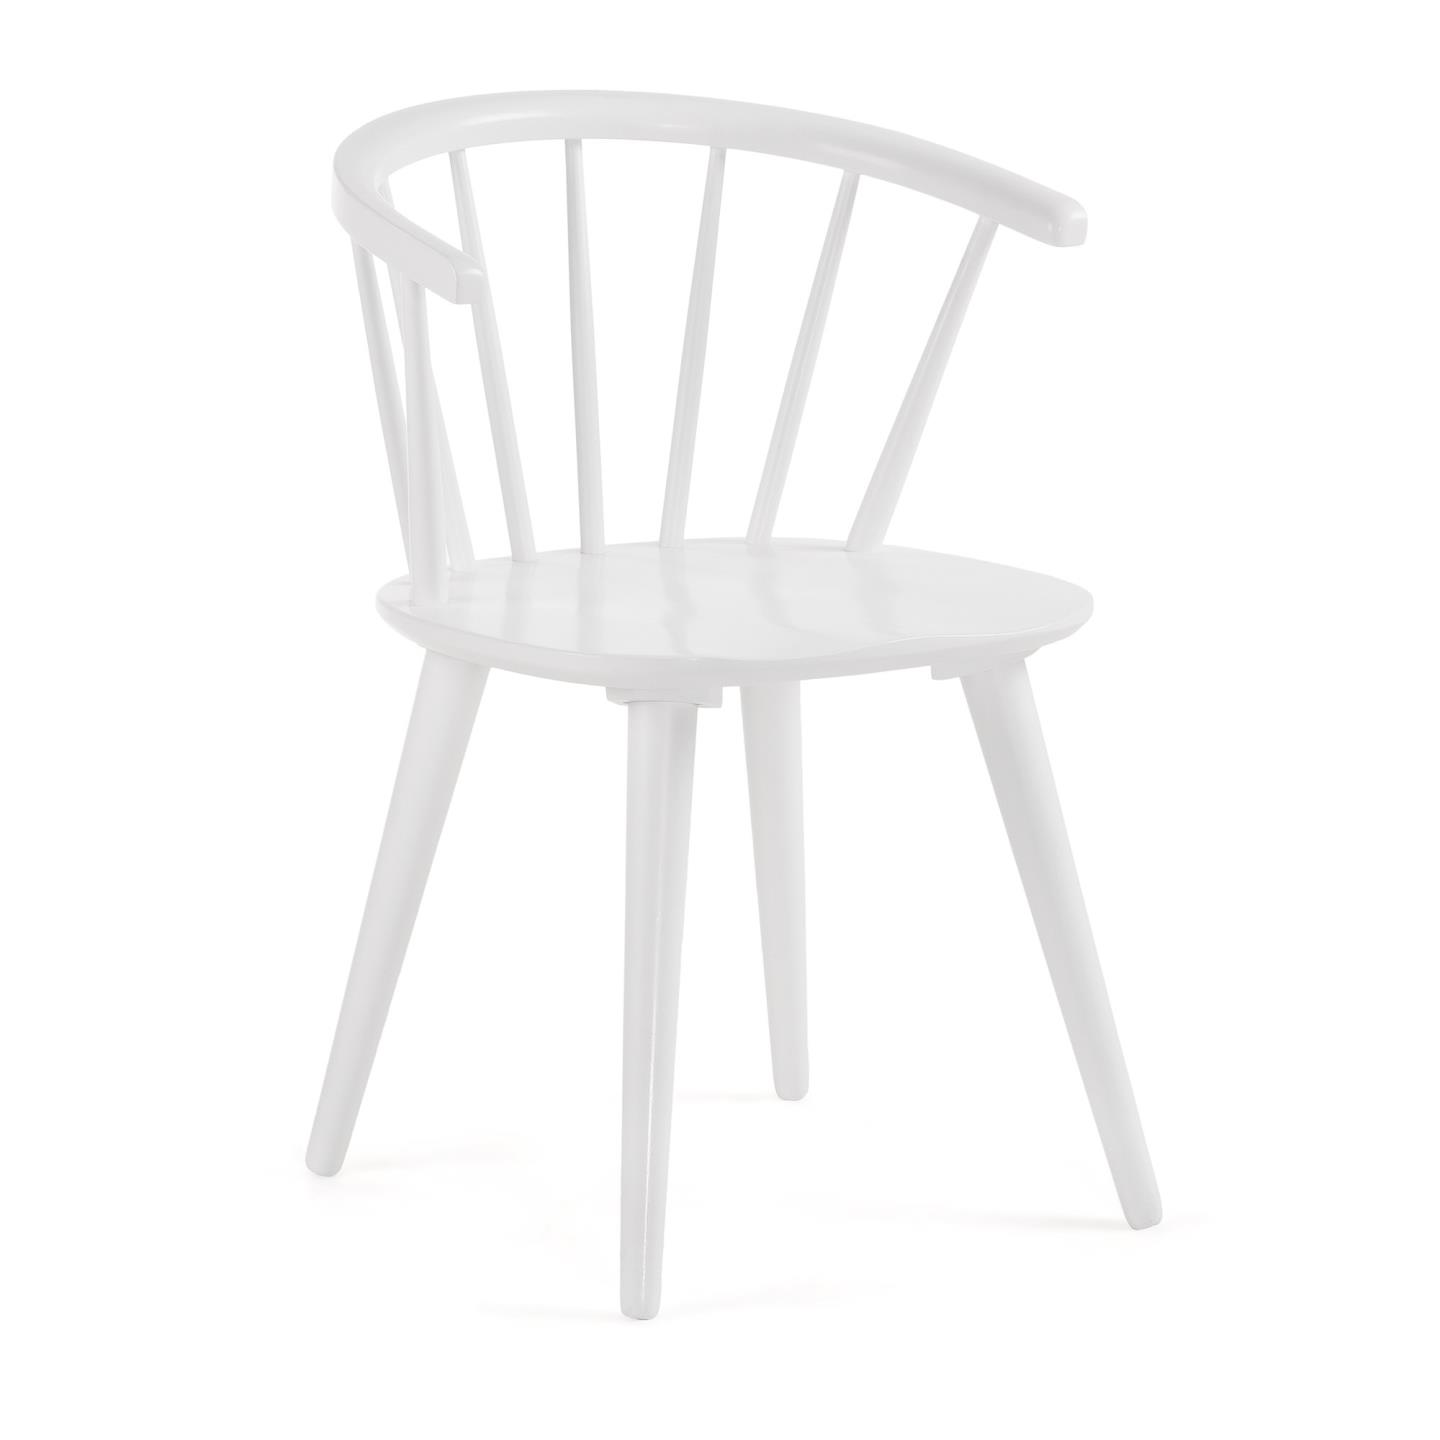 LAFORMA Trise spisebordsstol, m. armlæn - hvid spånplade og hvid gummitræ